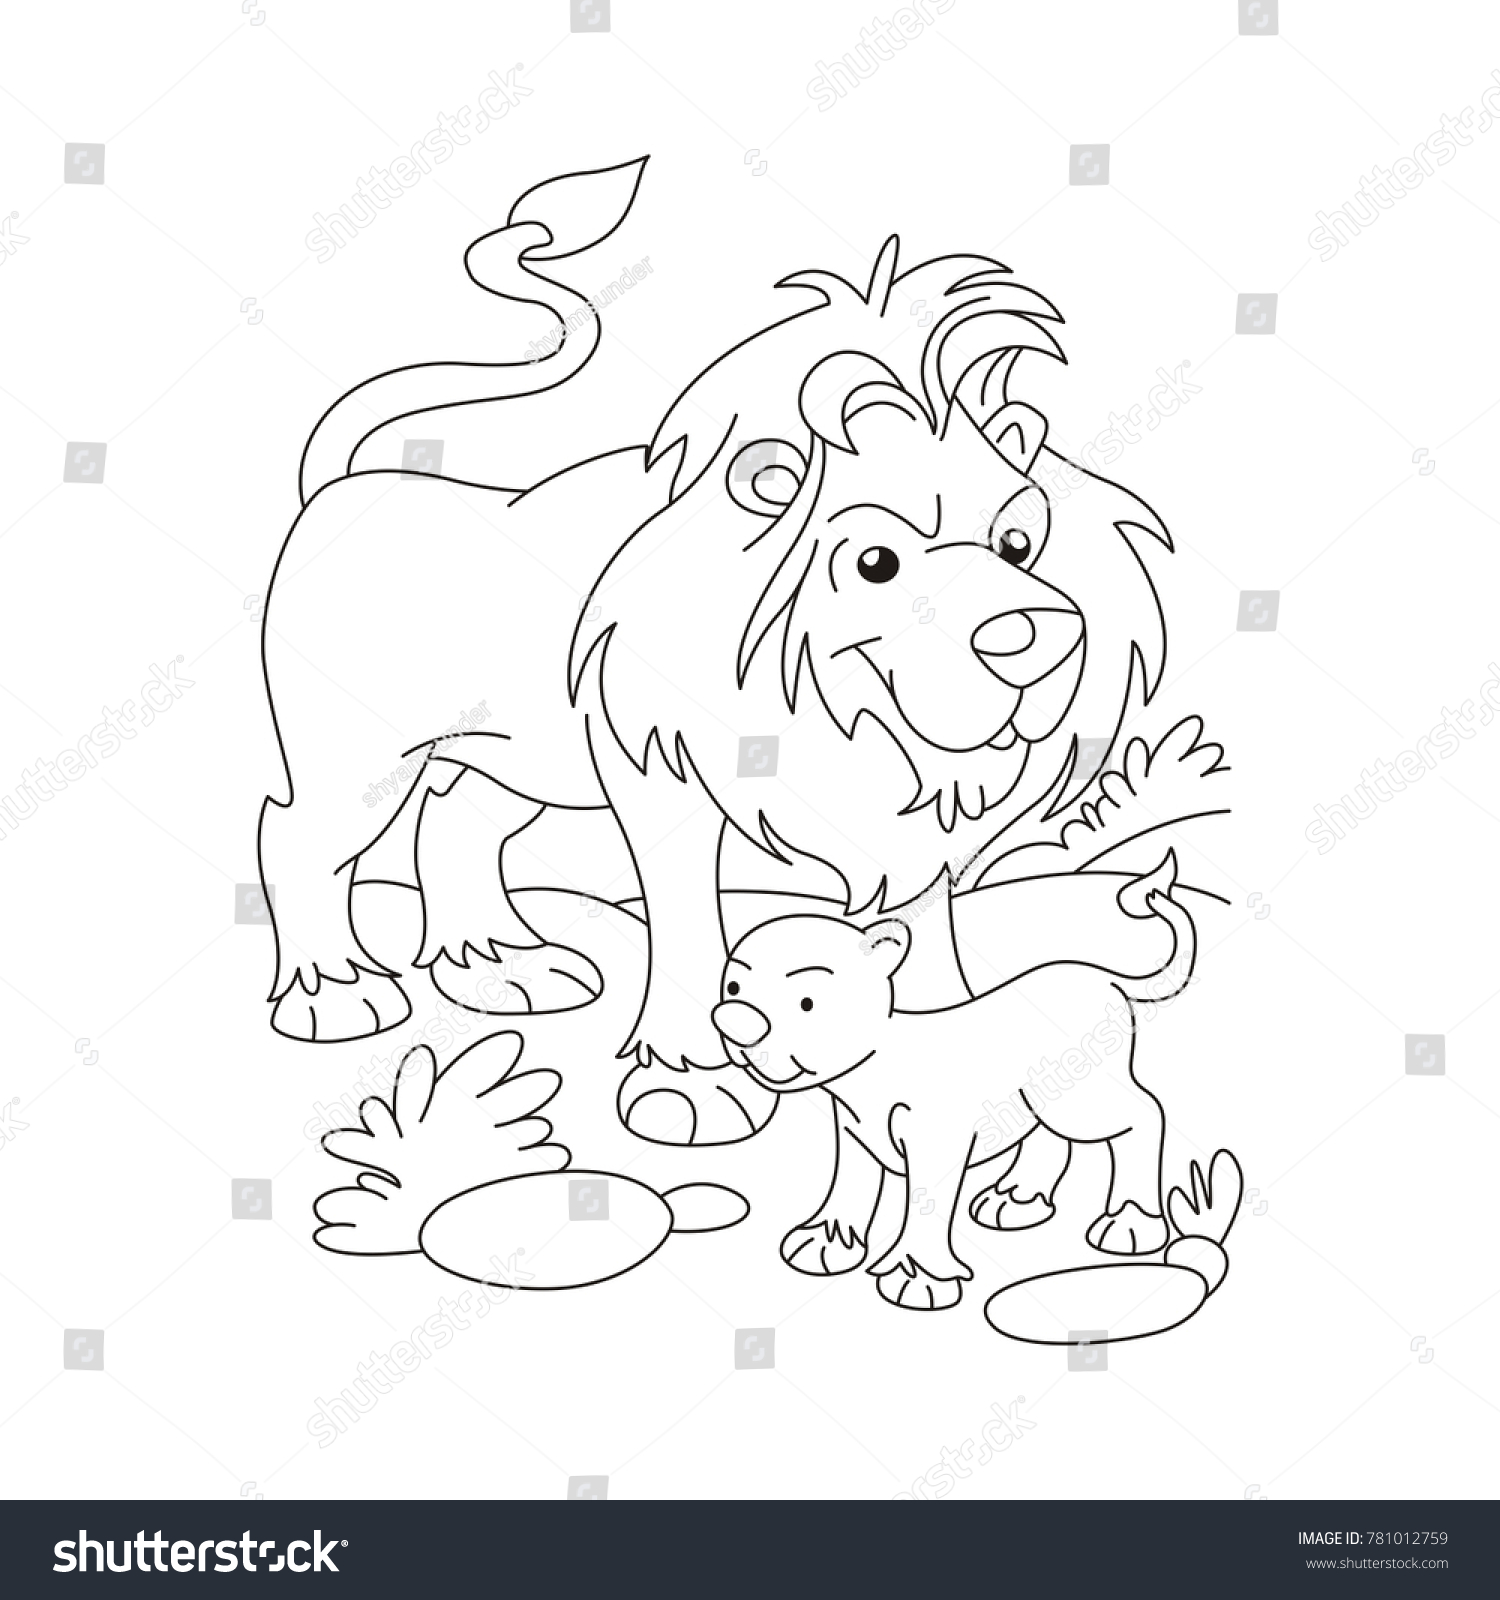 Лев и мышь толстой раскраска